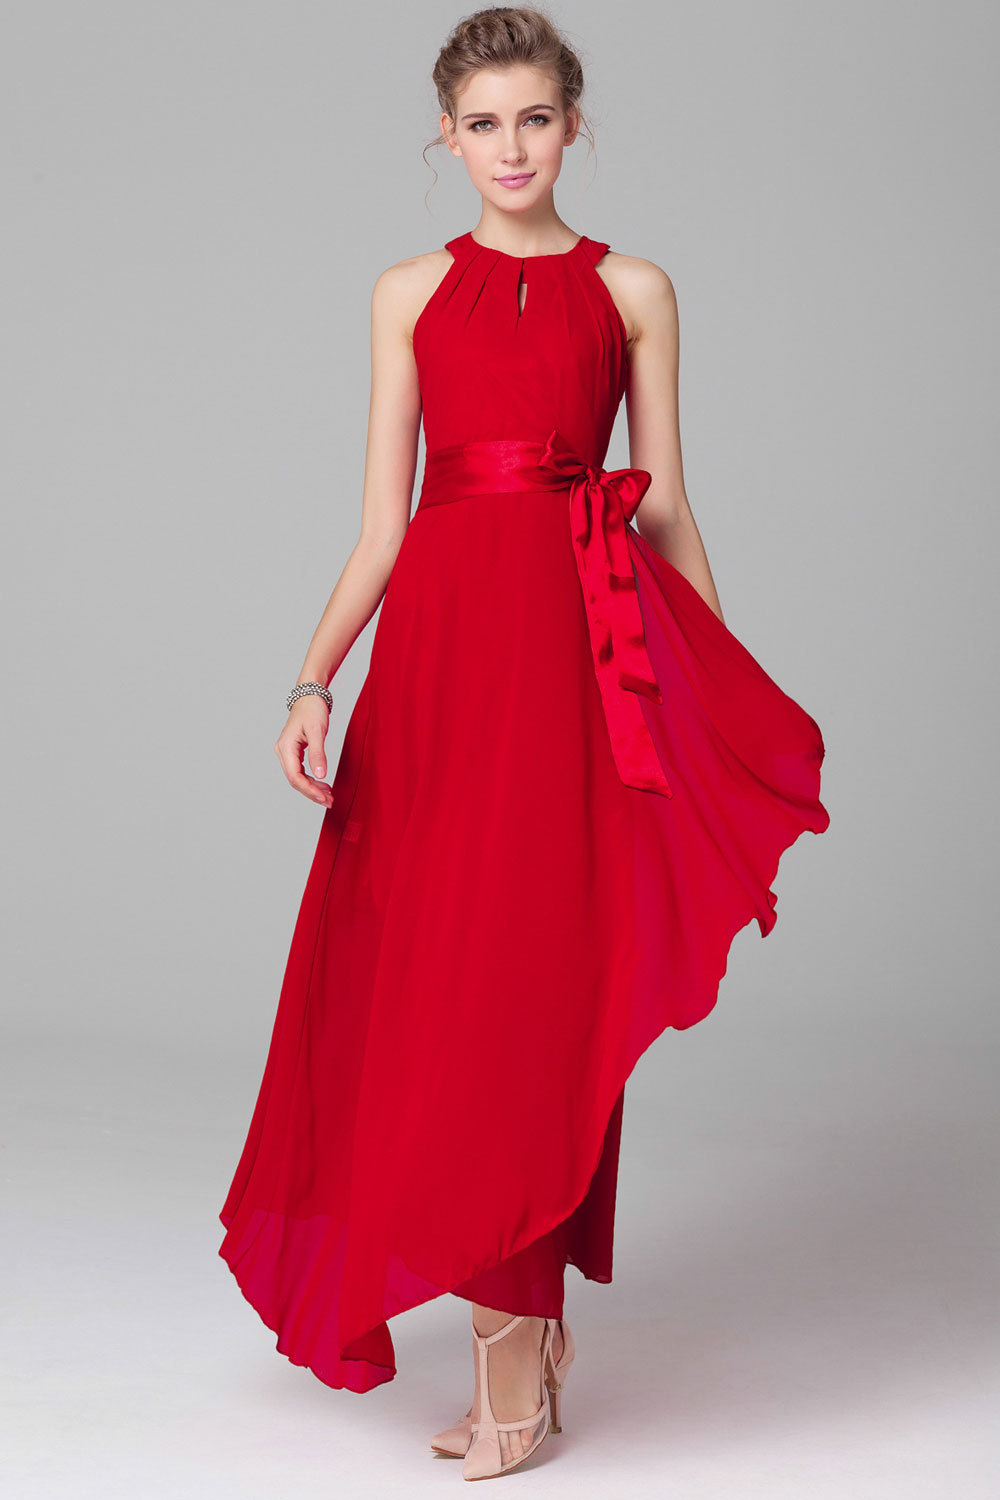 Unomatch Womens Chiffon Sleeveless Prom Dress Red - Women's Clothing